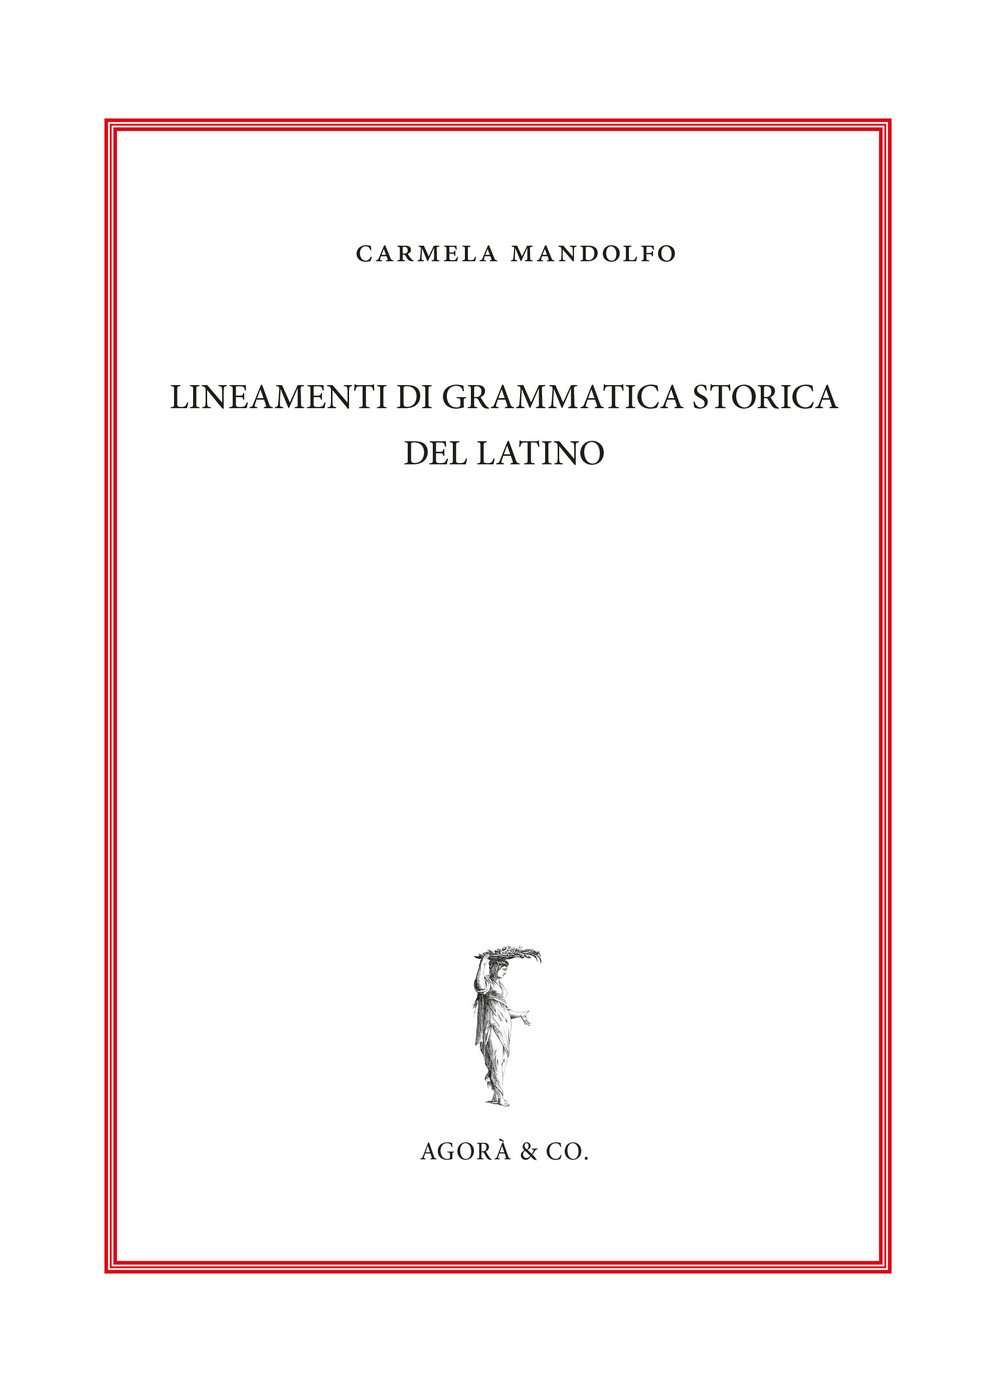 Image of Lineamenti di grammatica storica del latino